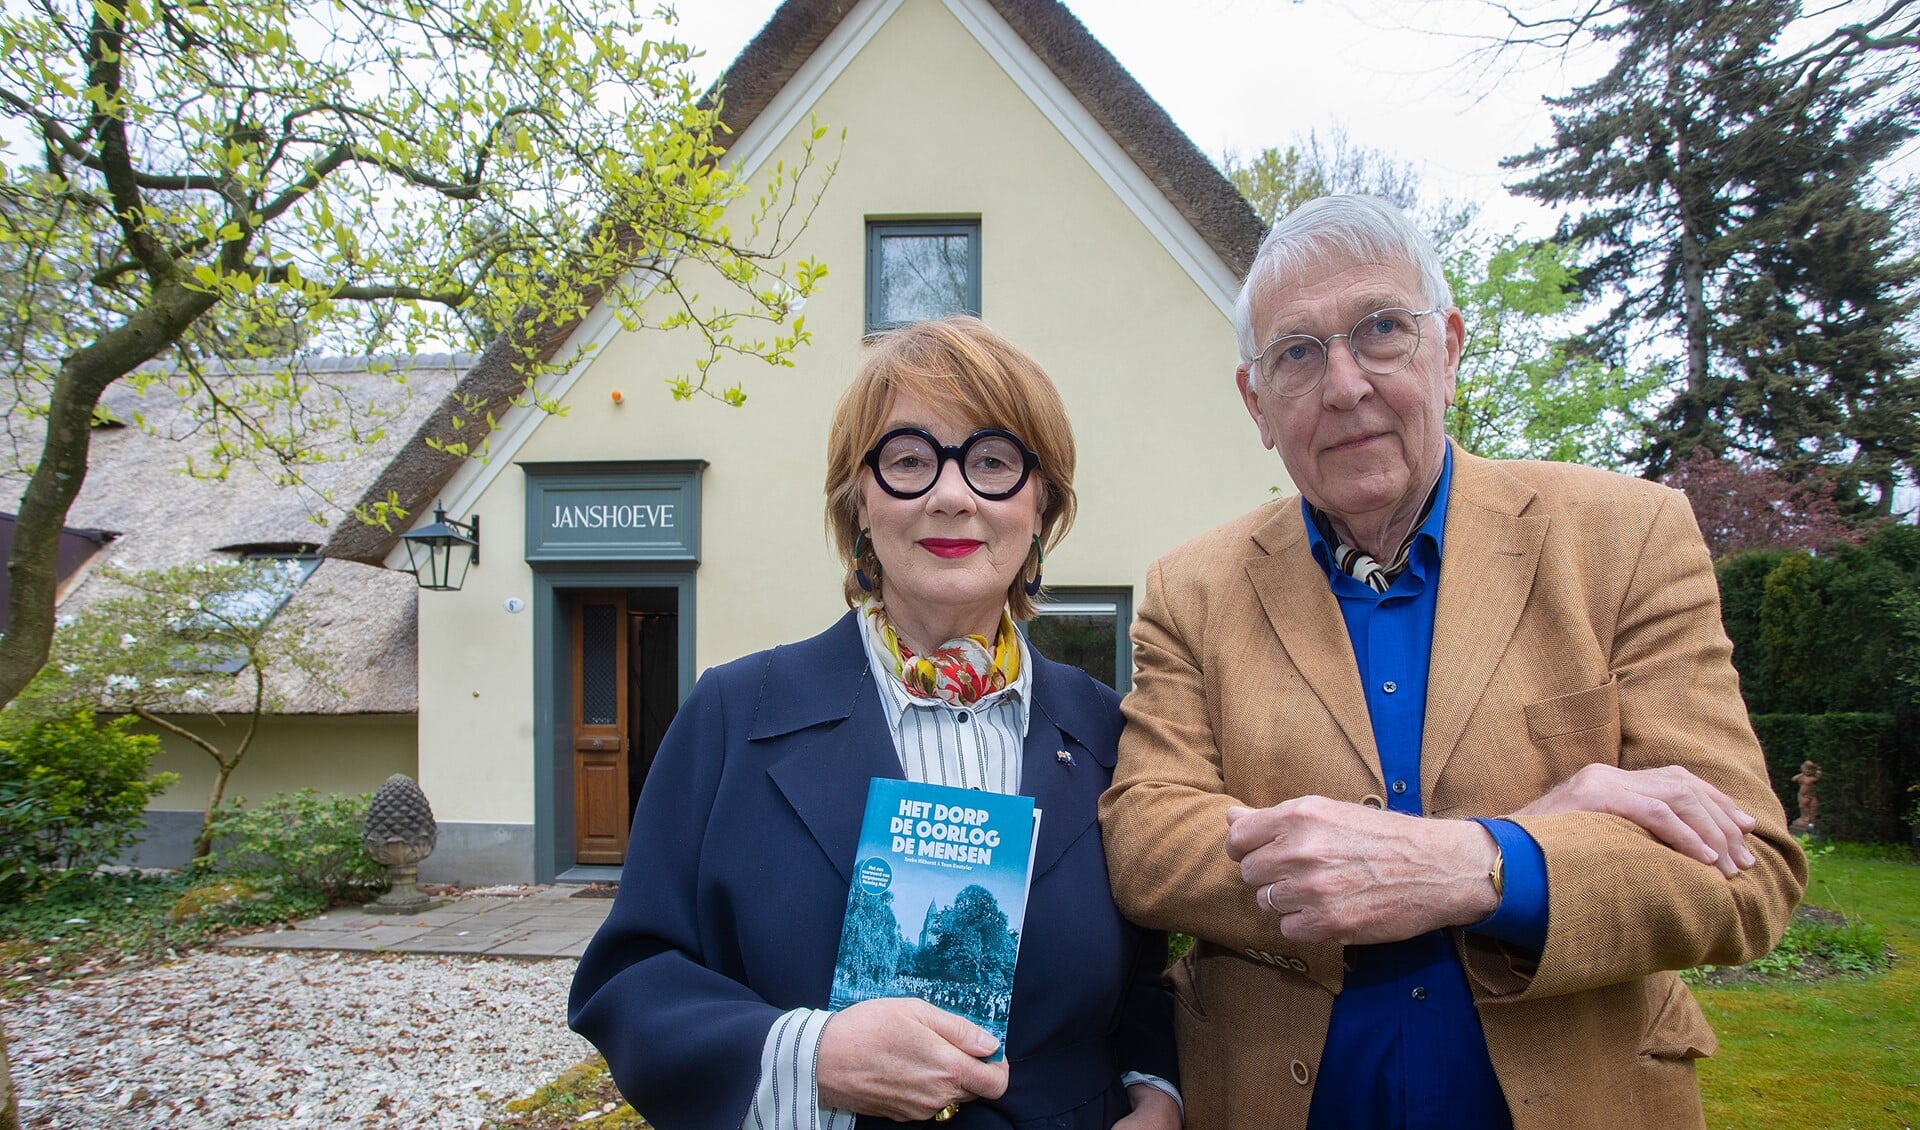 Ineke Hilhorst en Teun Koetsier met hun nieuwe boek 'Het dorp, de oorlog, de mensen'.